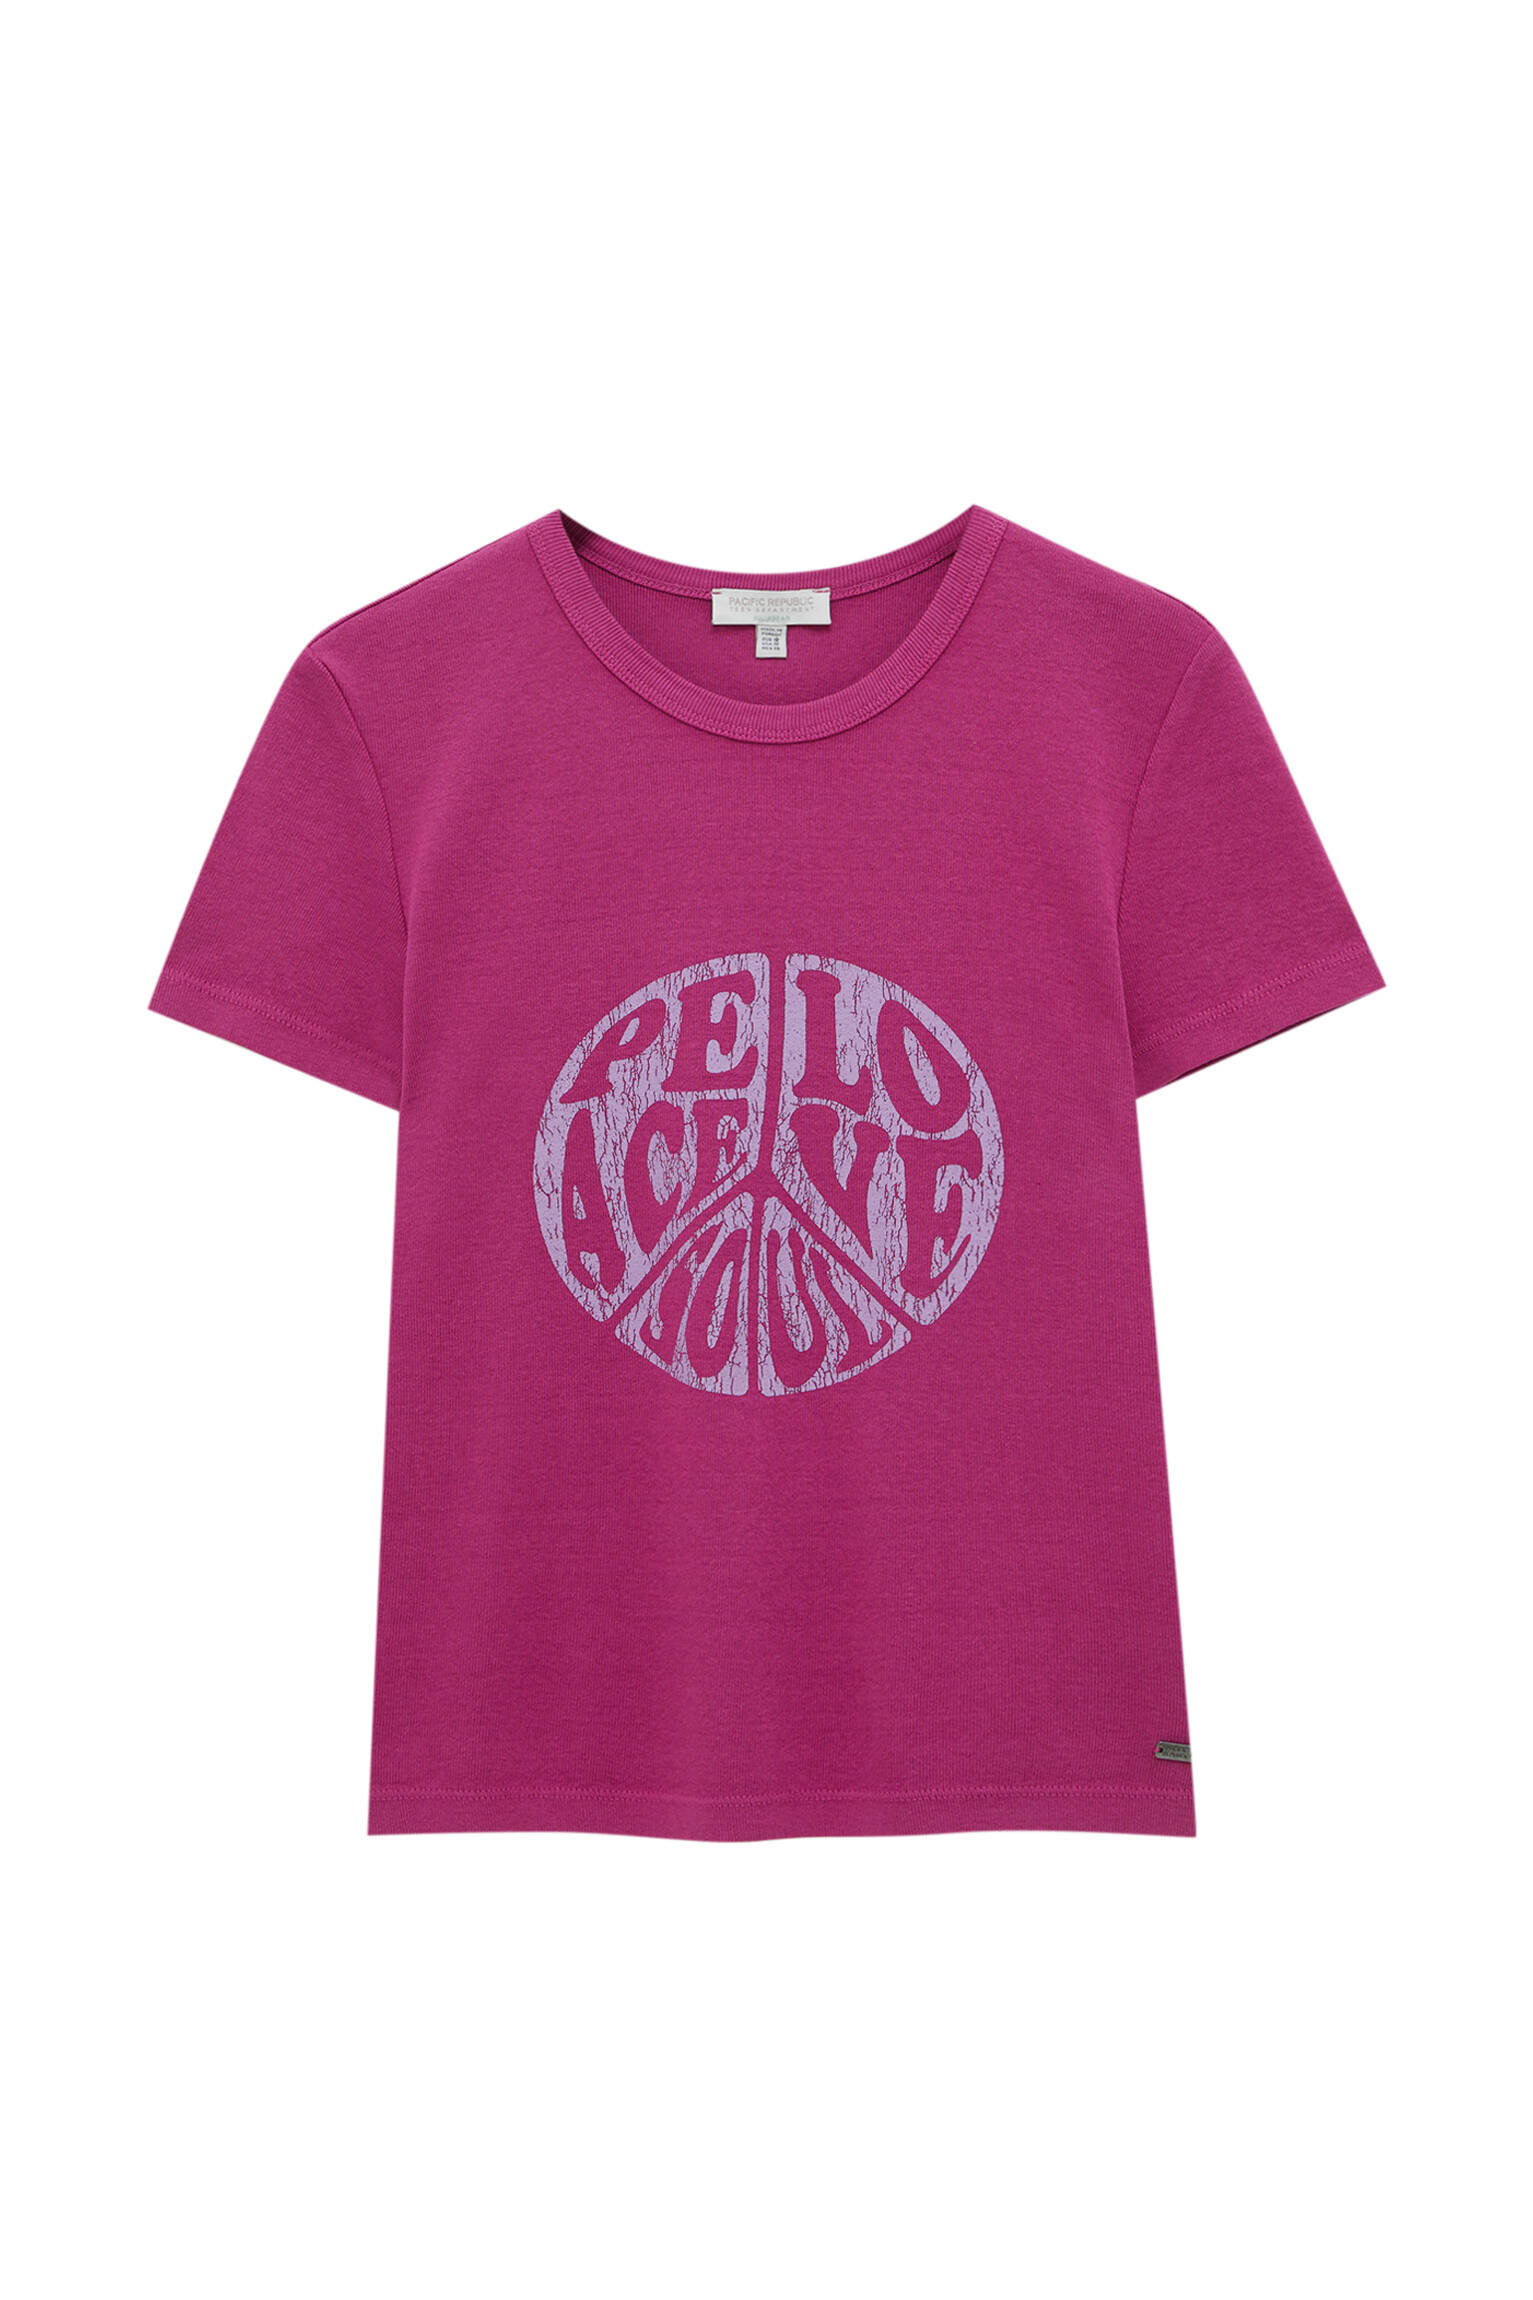 Pull&bear Femme T-shirt à Col Rond Et Manches Courtes, Avec Imprimé Cur Et Inscription « heart-shaped Box » De Nirvana. Effet Usé. Framboise Xs